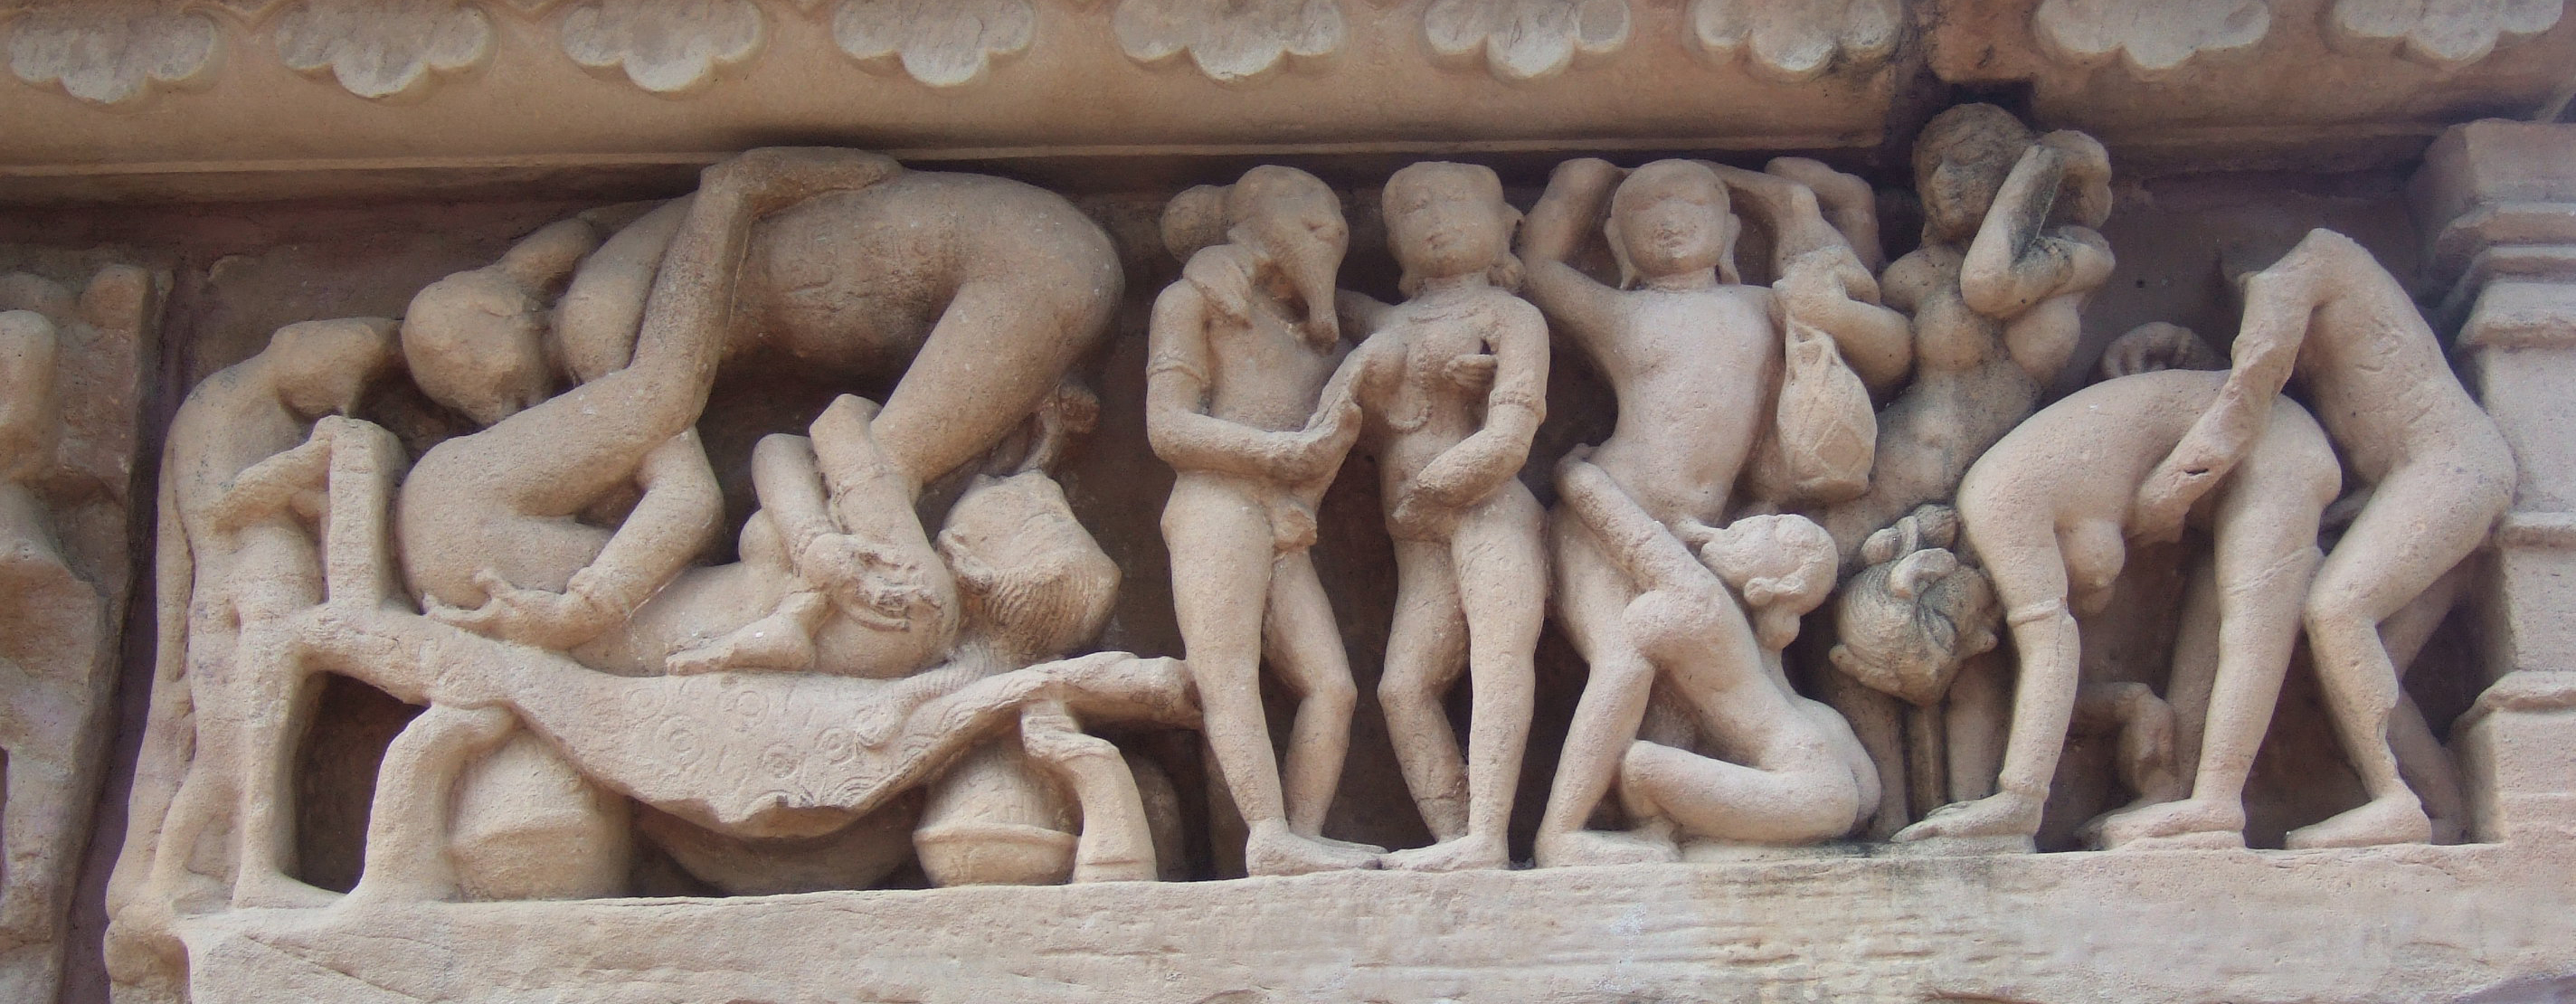 Sex in der Antike war nichts anstössiges